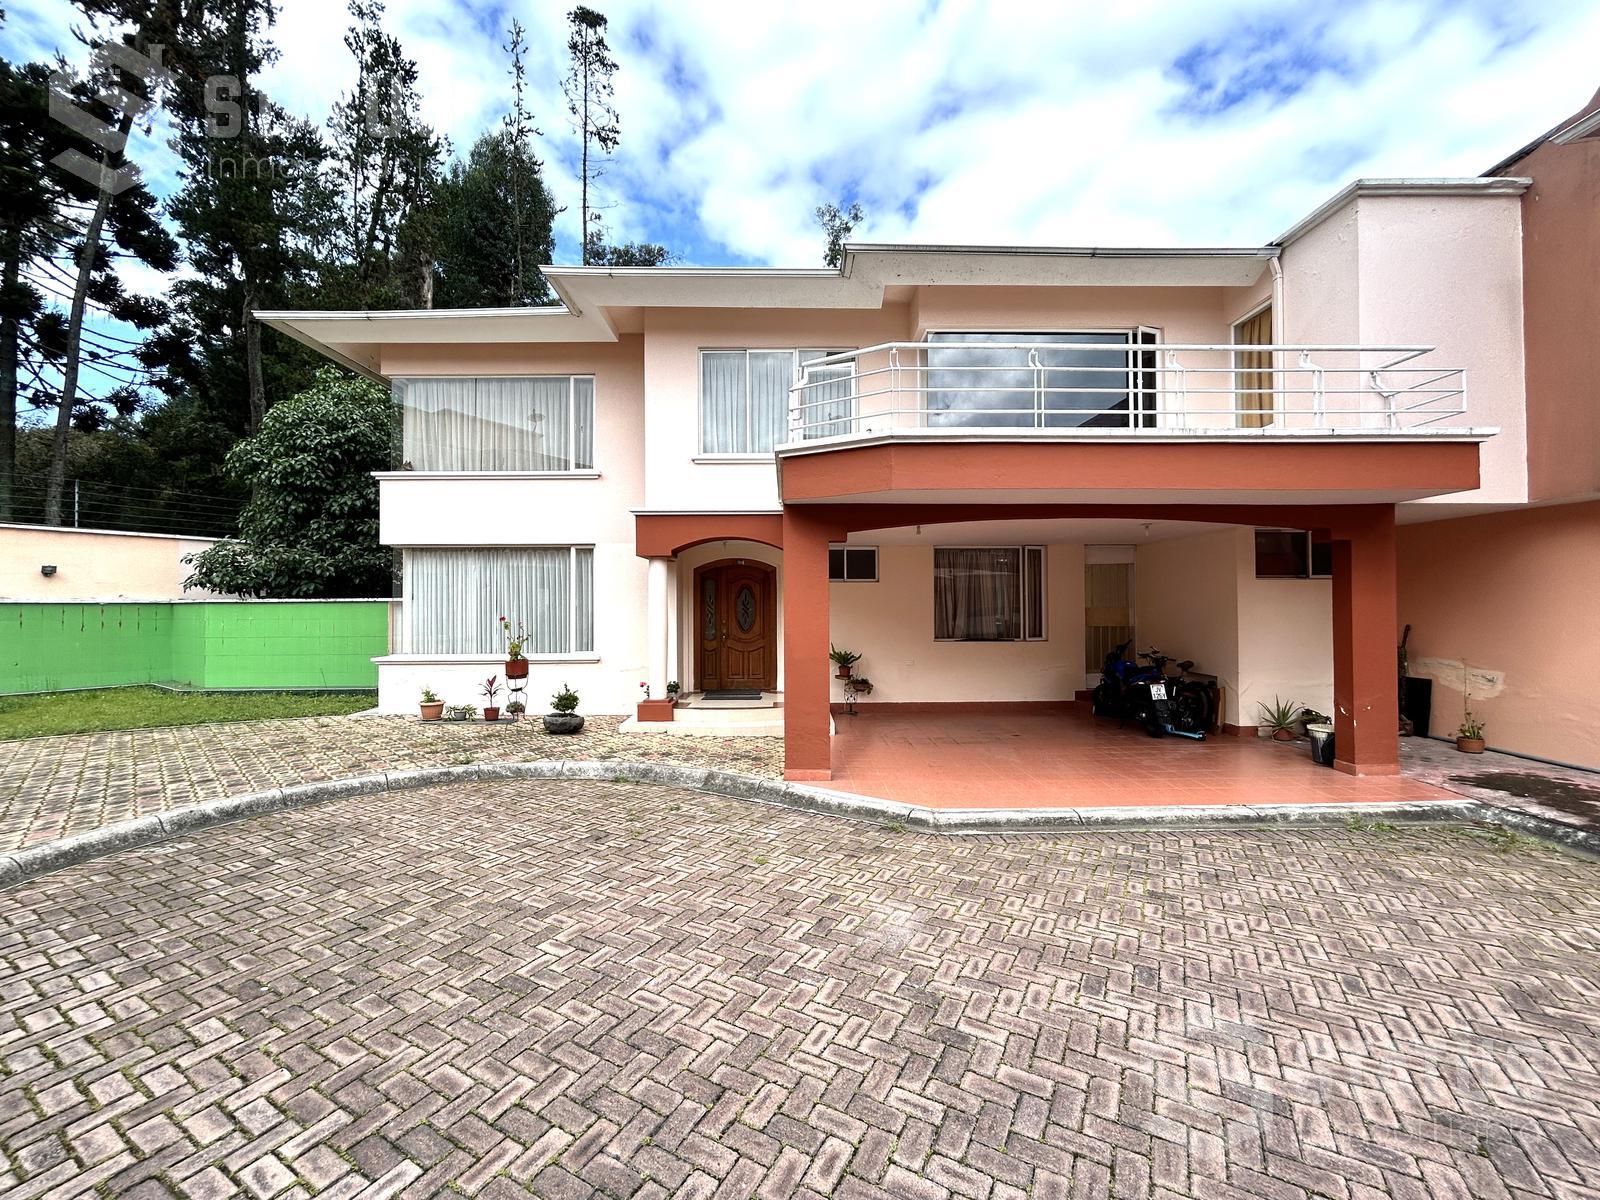 ¡De oportunidad! Vendo casa 307 m en Urbanización, 4 Dorm., 2 Garajes, sector Conocoto, $169.900